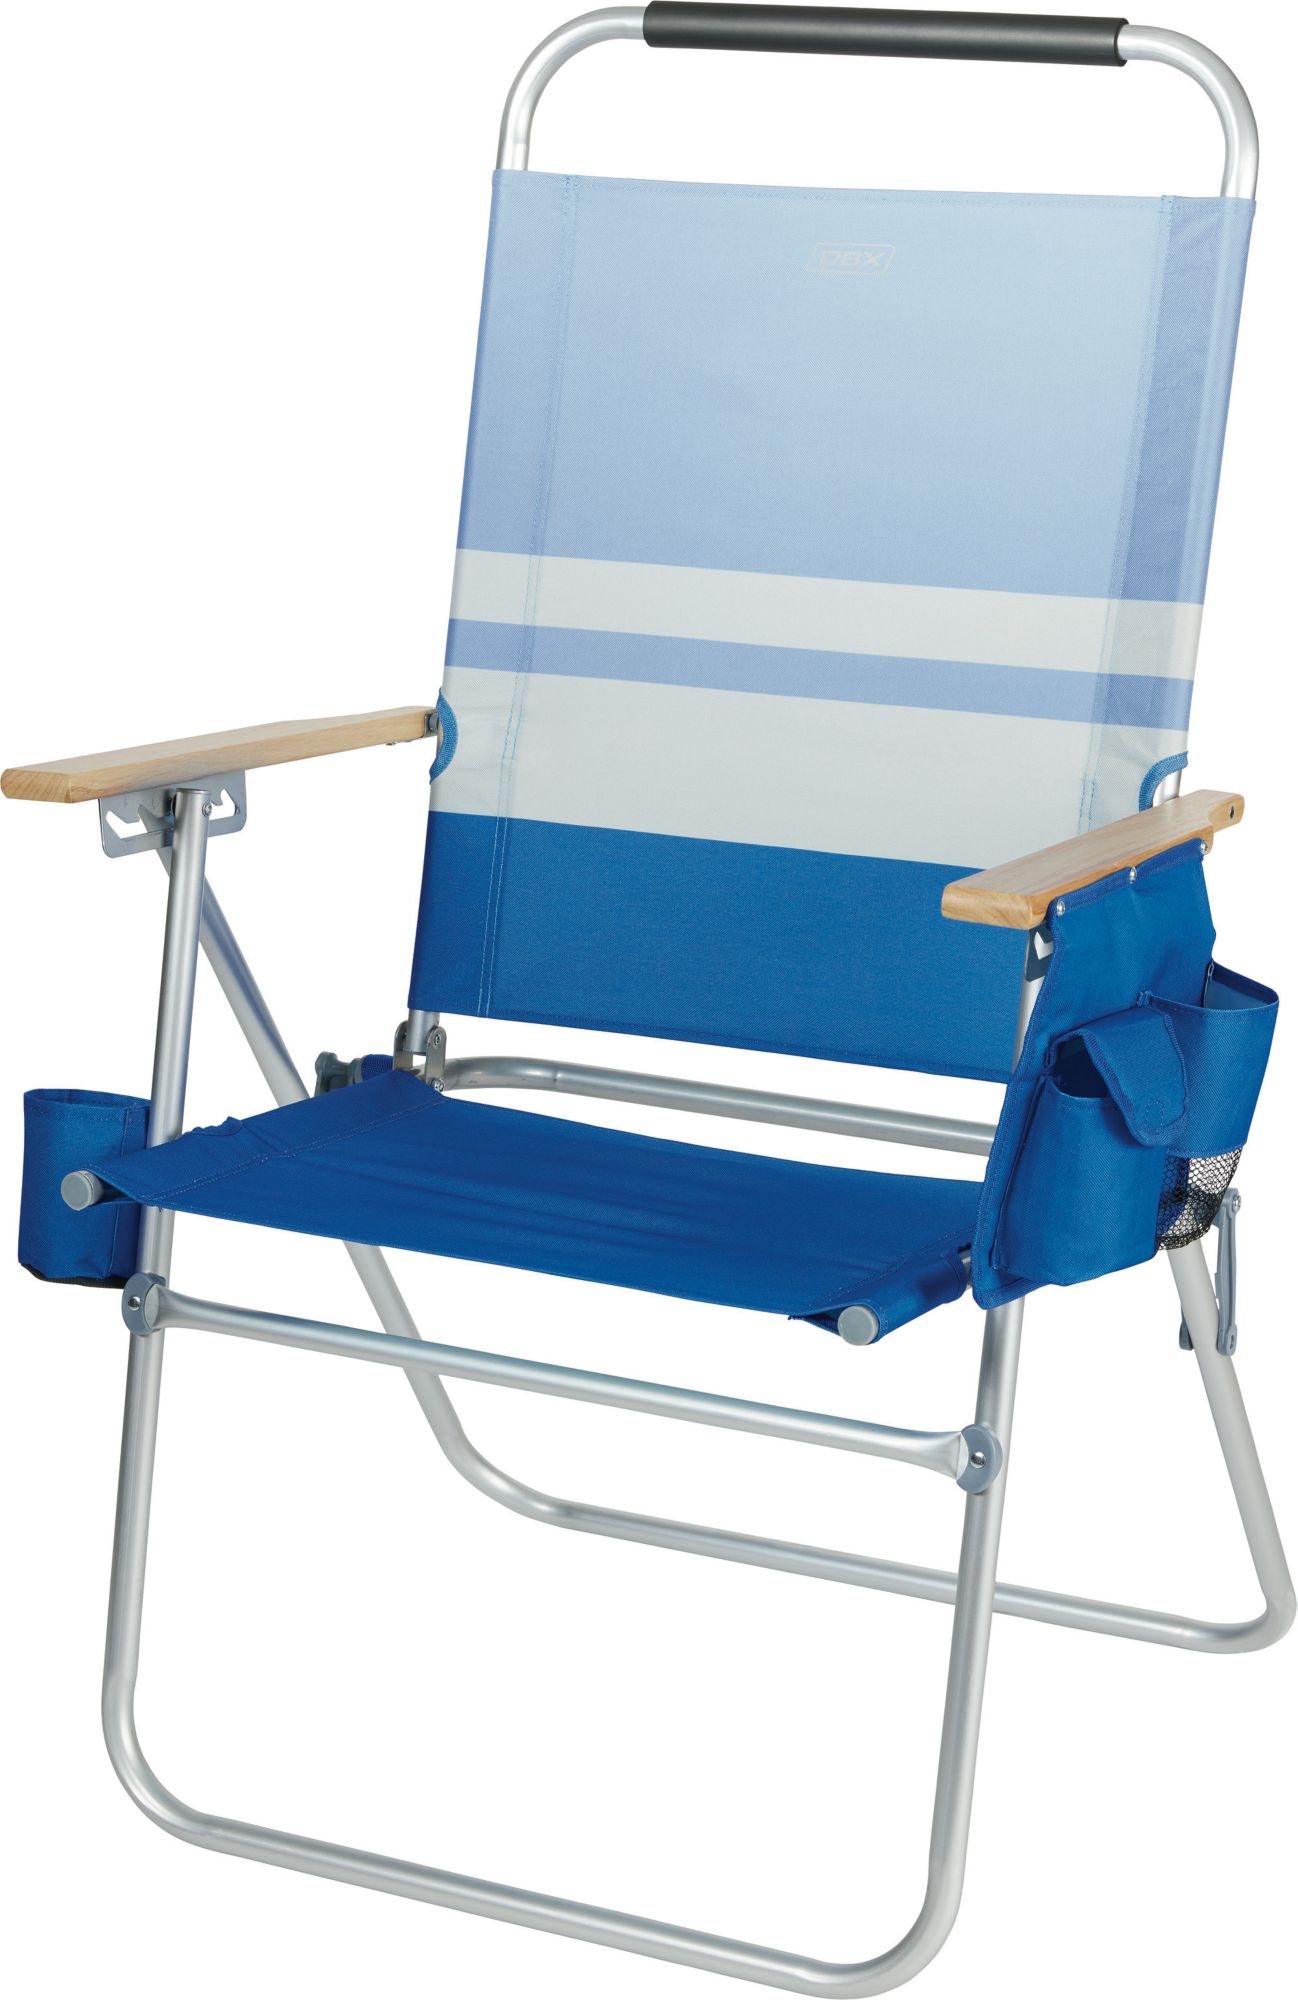 DBX High Profile Beach Chair